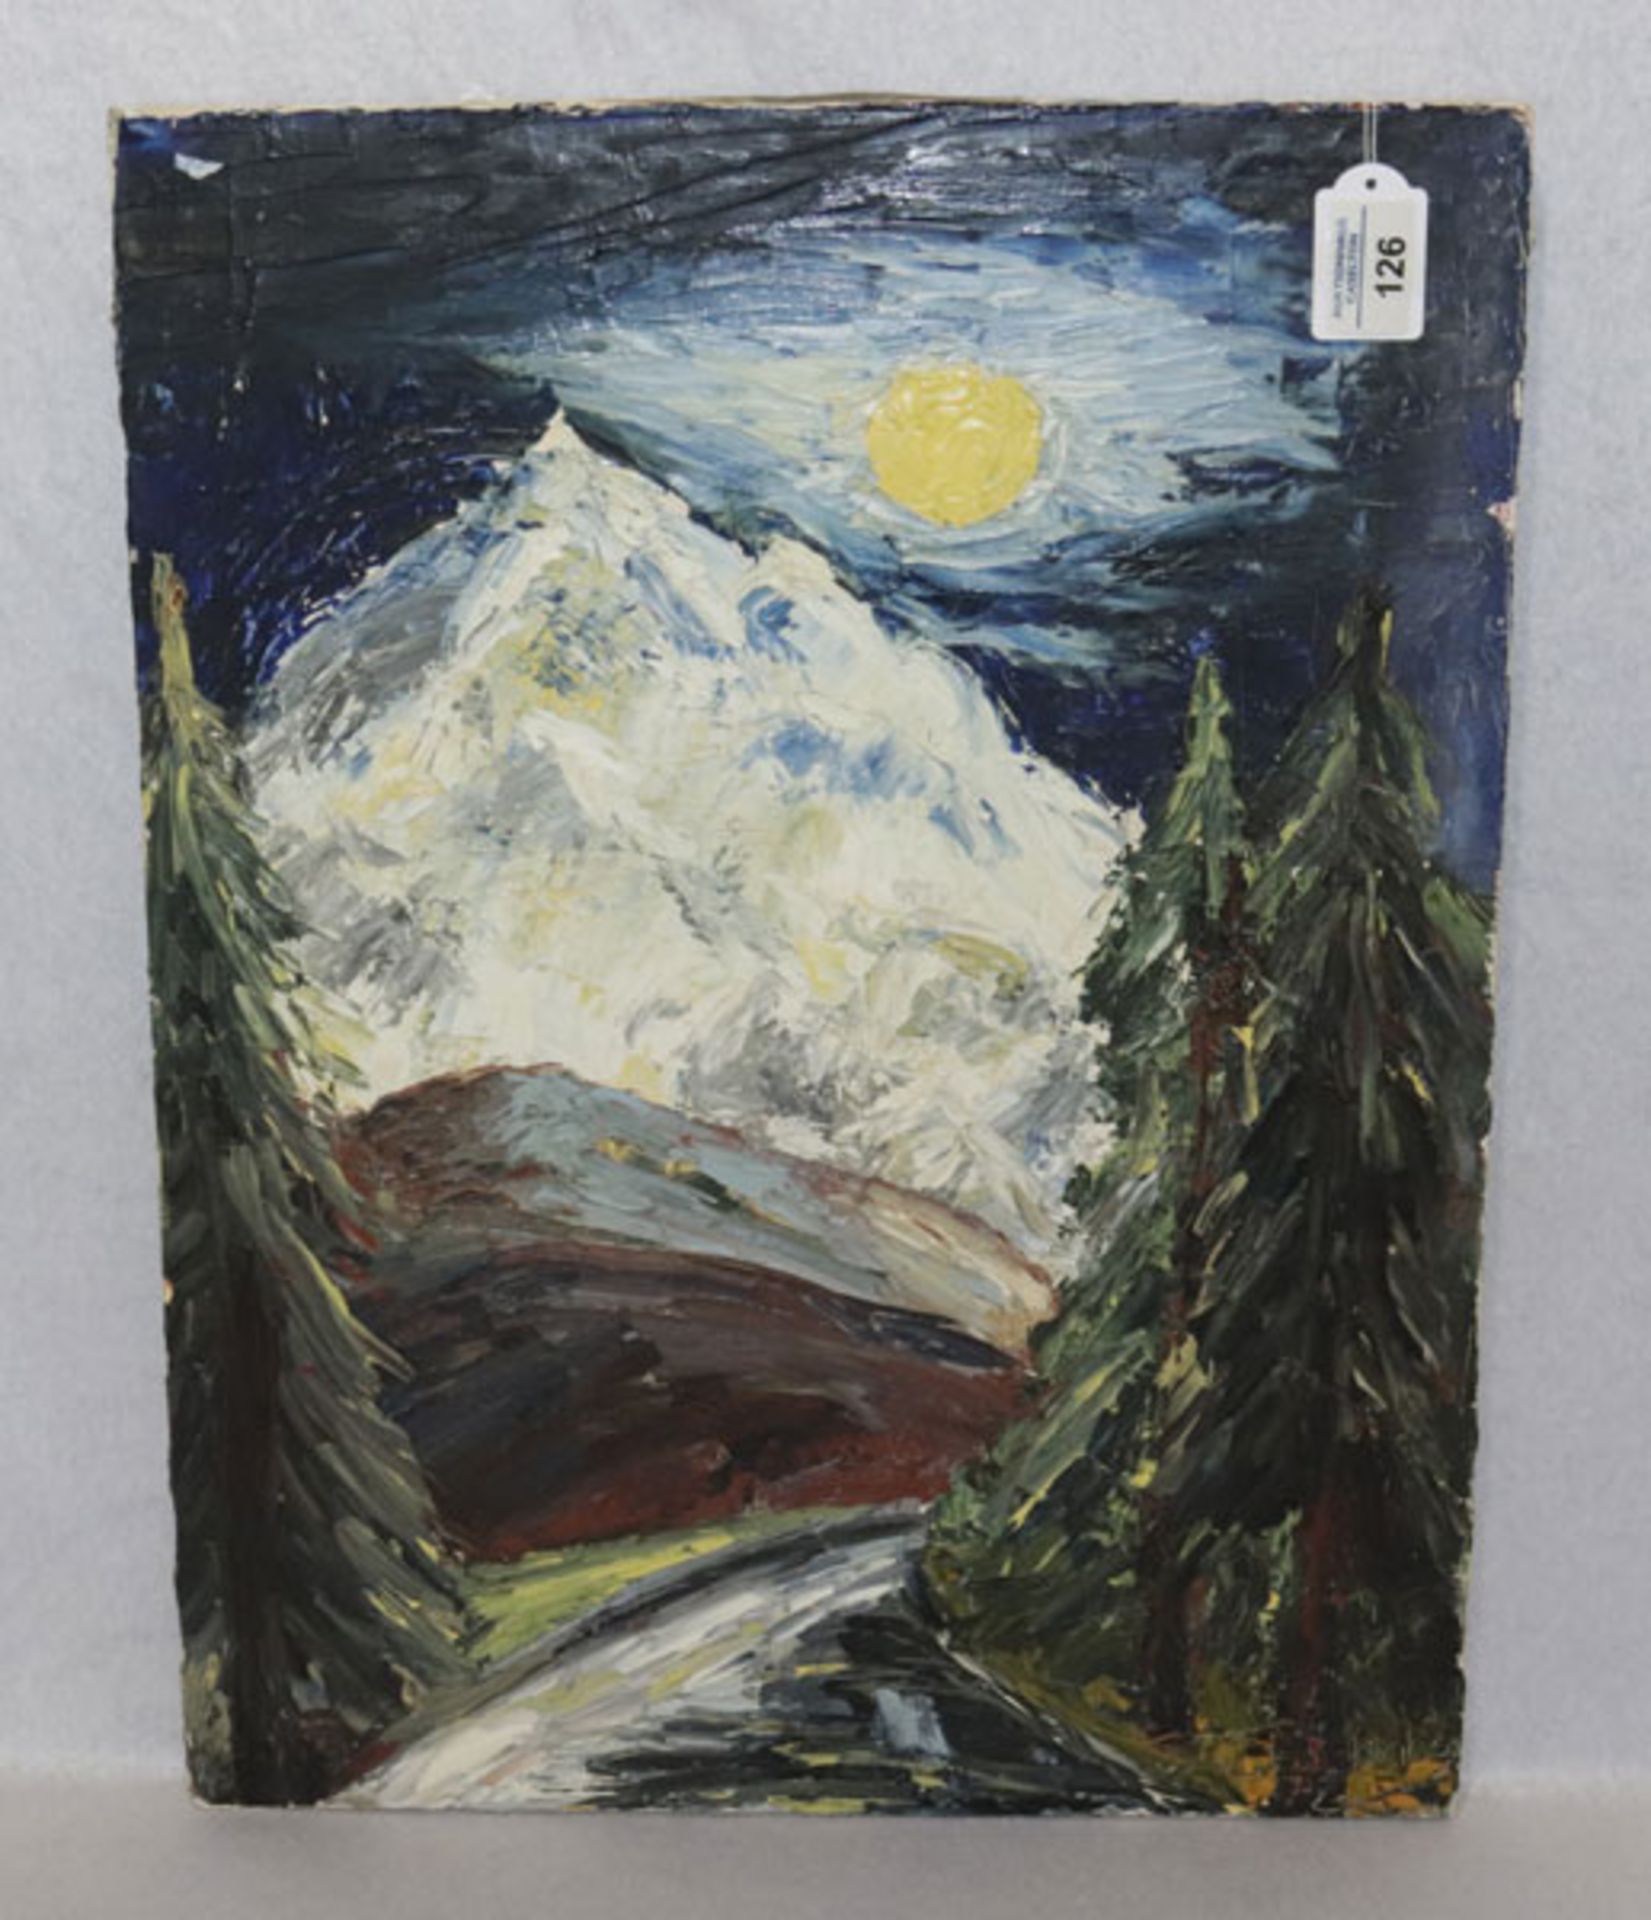 Gemälde ÖL/LW 'Hochgebirge im Mondschein', undeutlich signiert, LW hat Riß/bechädigt, ohne Rahmen 53